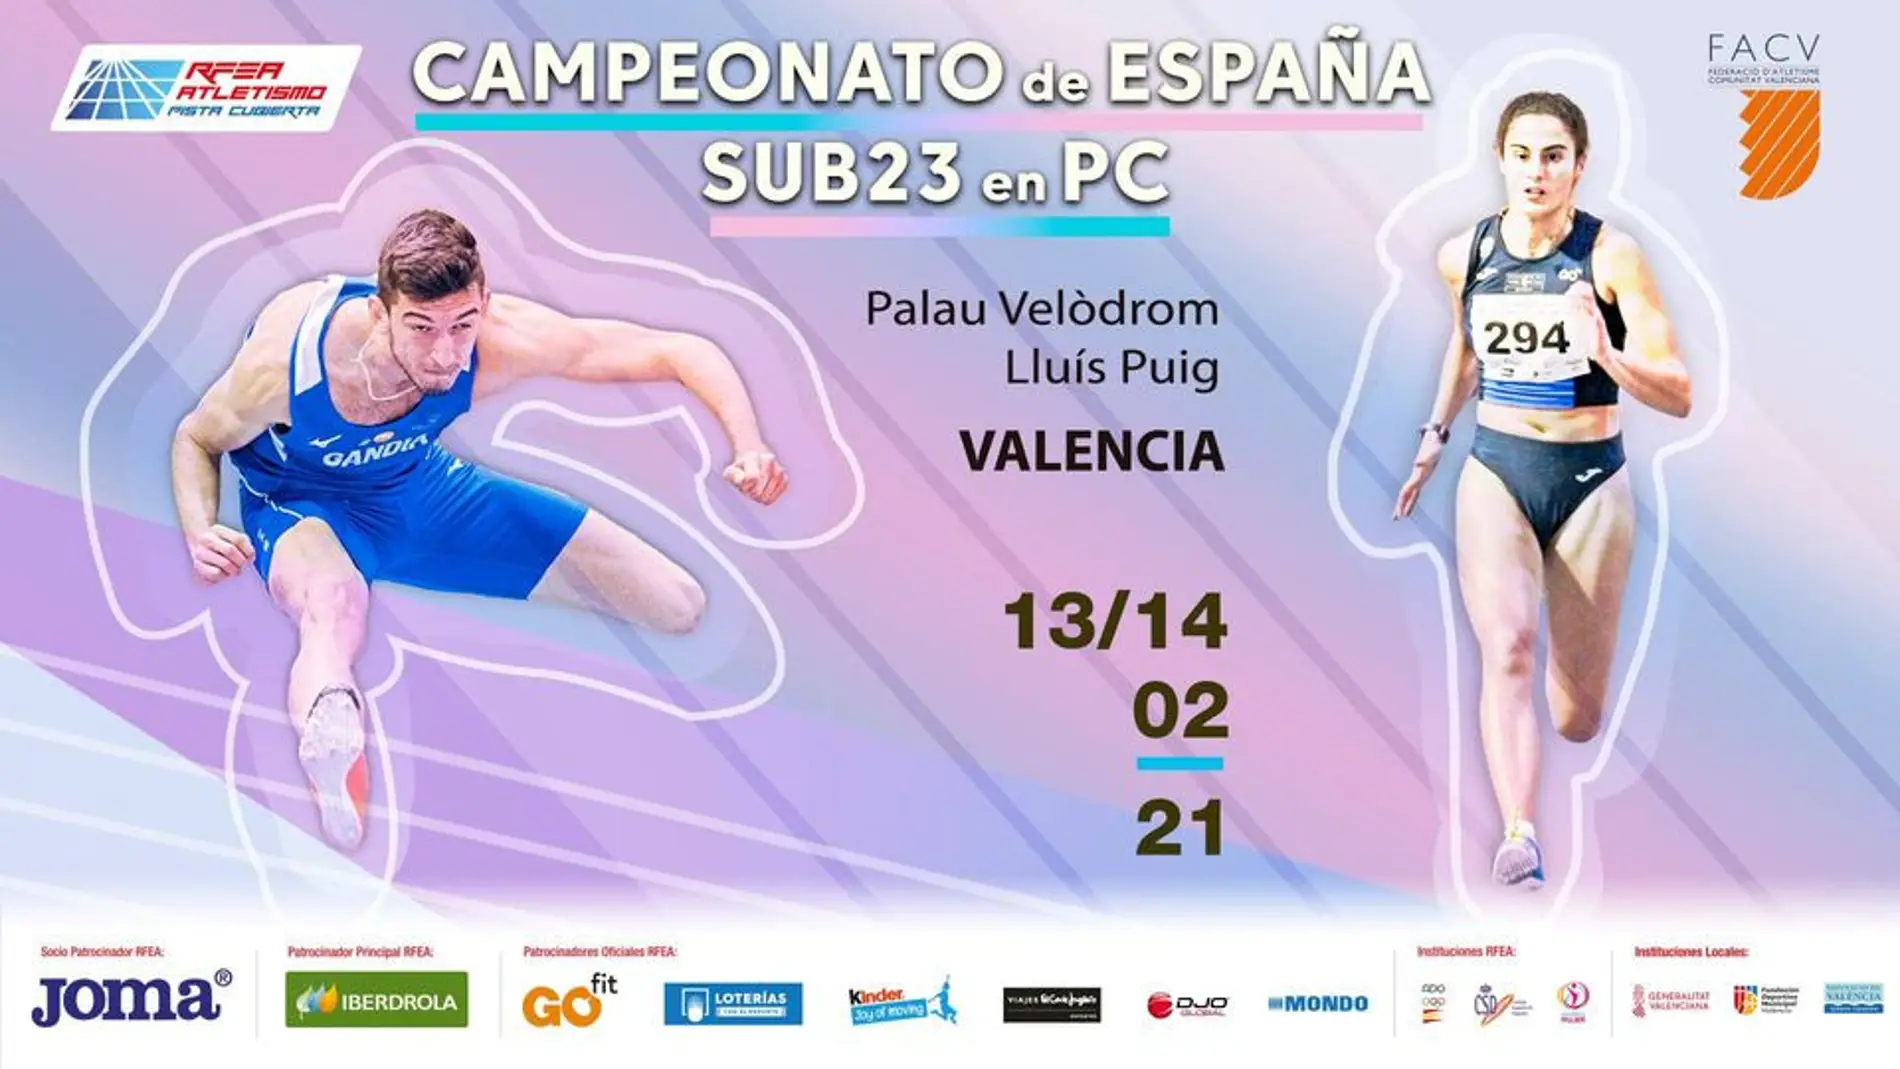 La atleta oriolana Carmen Marco encabeza el cartel del Campeonato de España sub-23 en Pista Cubierta 